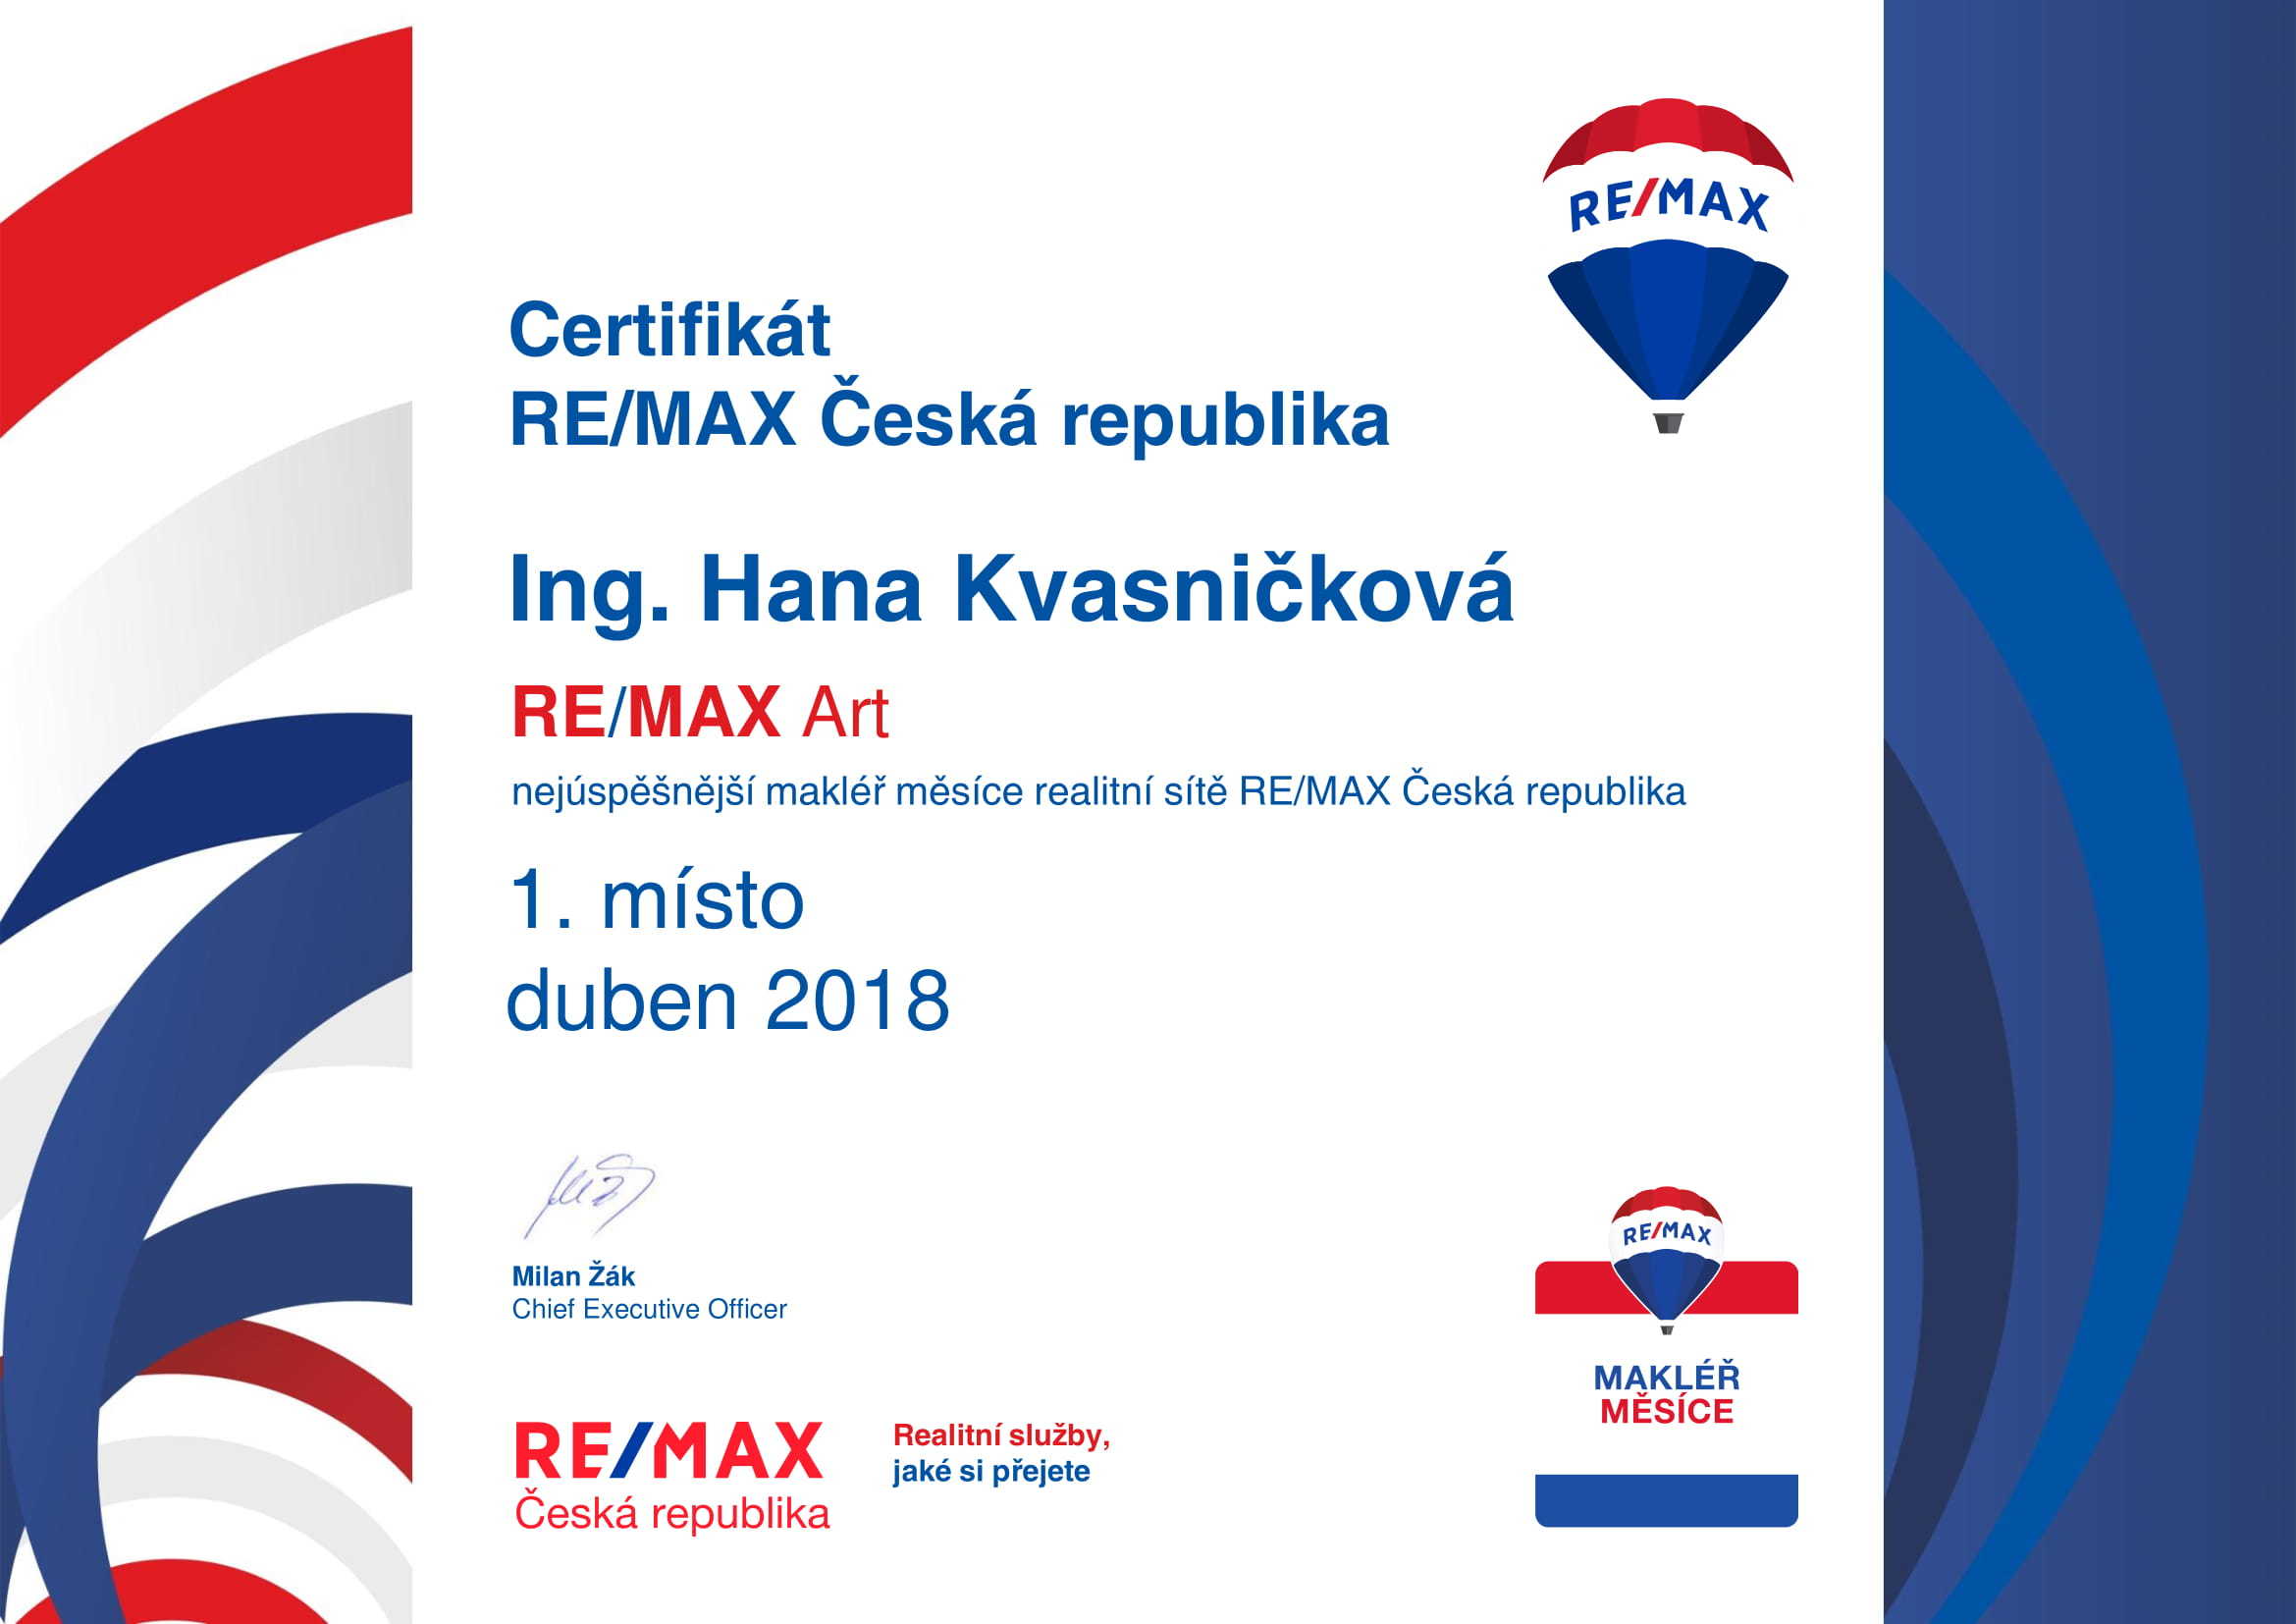 Makléř měsíce RE/MAX Czech